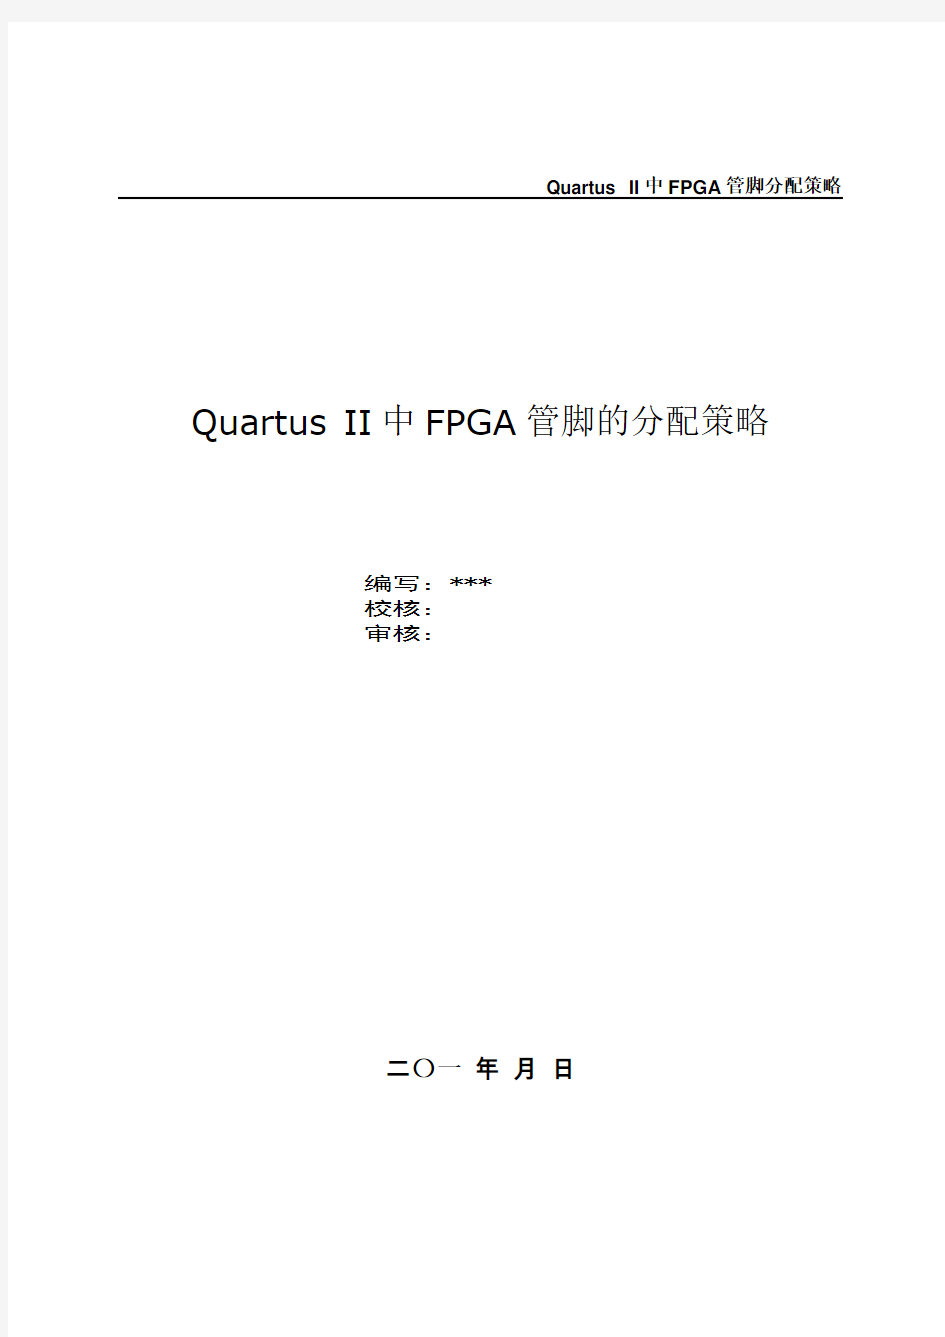 Quartus II中FPGA管脚的分配策略